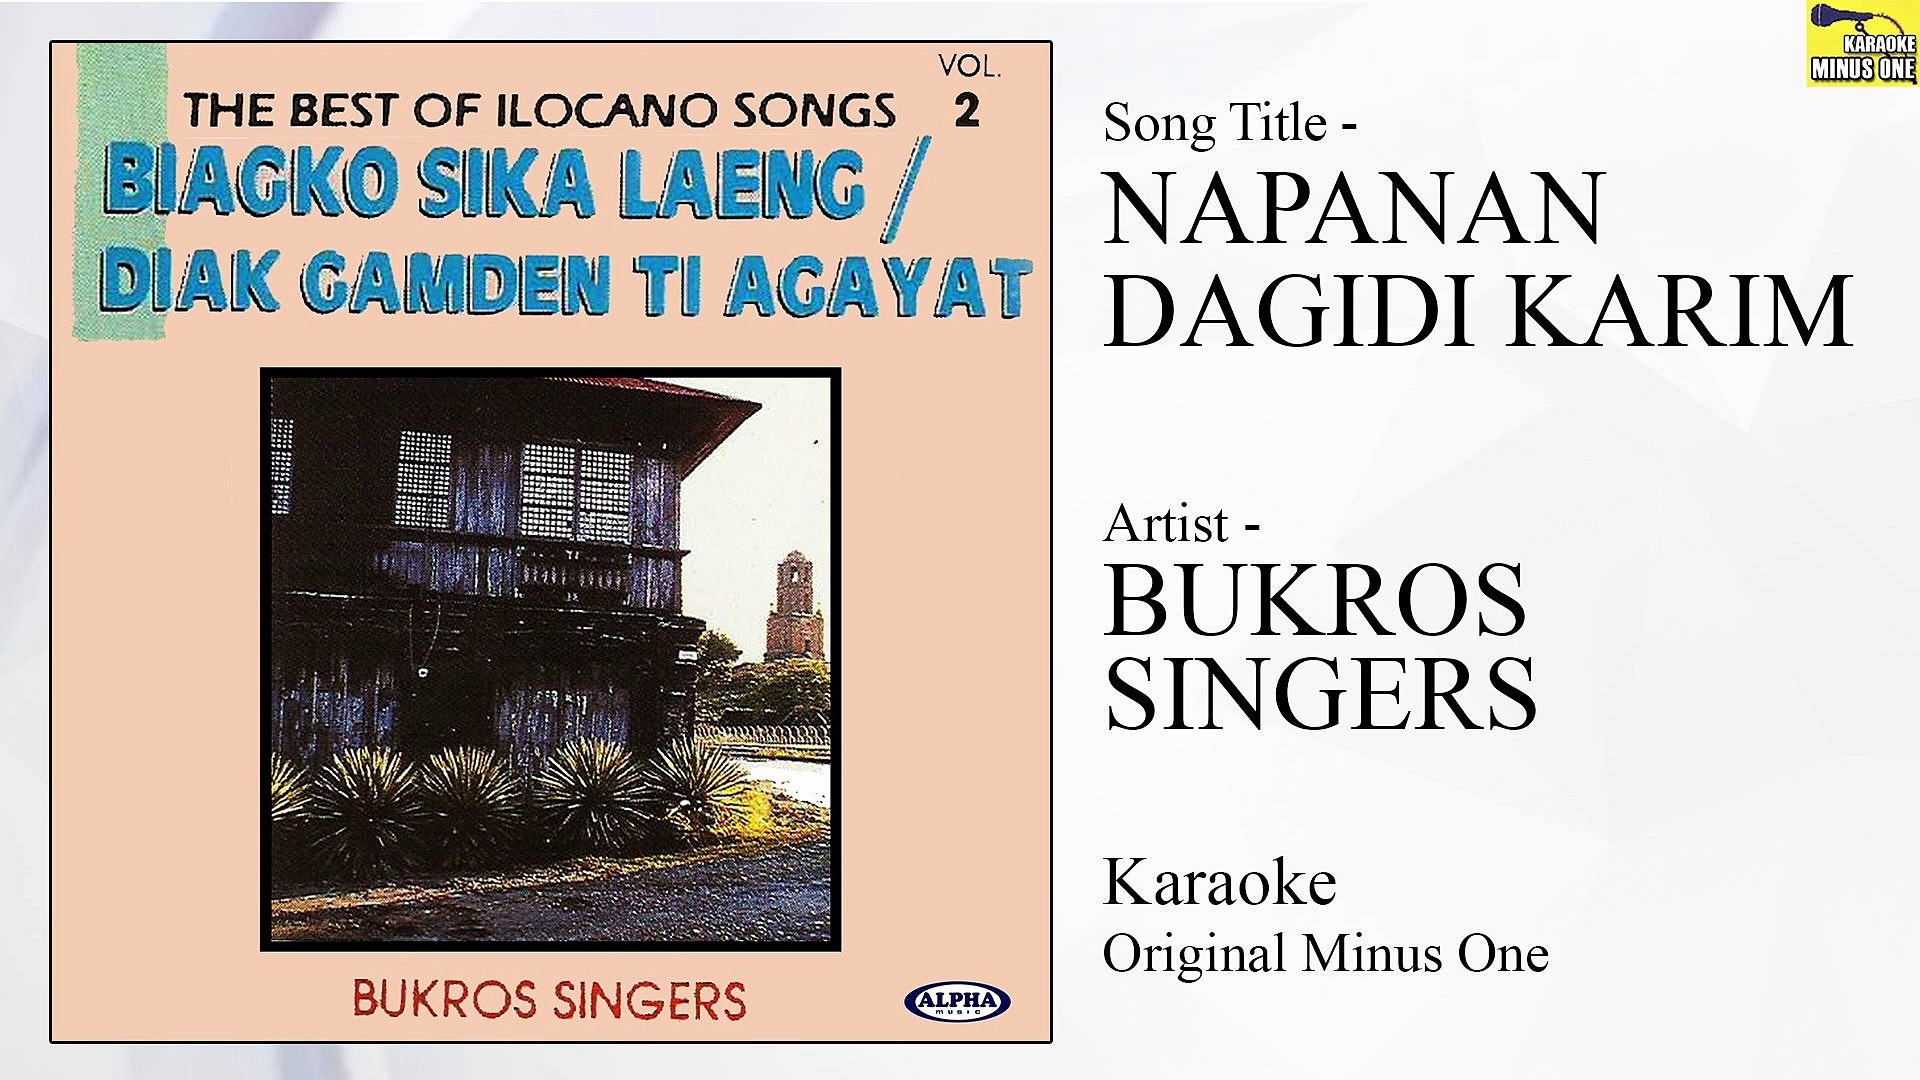 Bukros Singers - Napanan Dagidi Karim (Original Minus One)